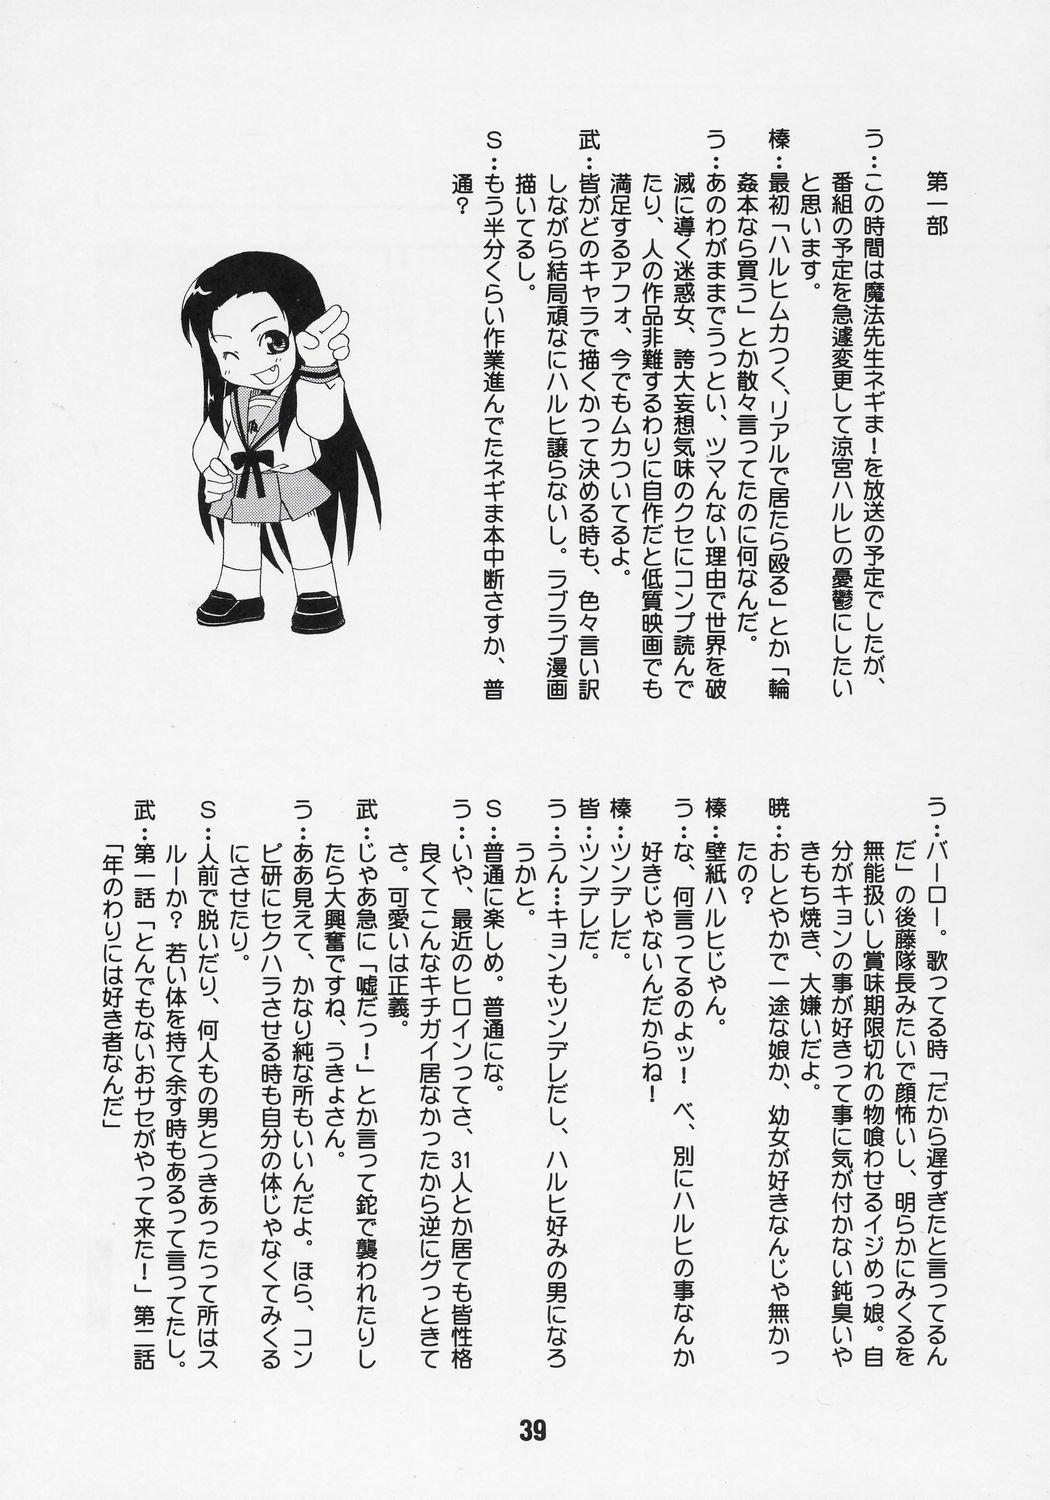 [Shinohara Heavy Industry (Akatsuki, Haruna Mao, Musashiya, Ukyochu) HaruhiX (The Melancholy of Haruhi Suzumiya) [篠原重工 (暁, 榛名まお, むさしや, うきょちゅう) ハルヒックス (涼宮ハルヒの憂鬱)